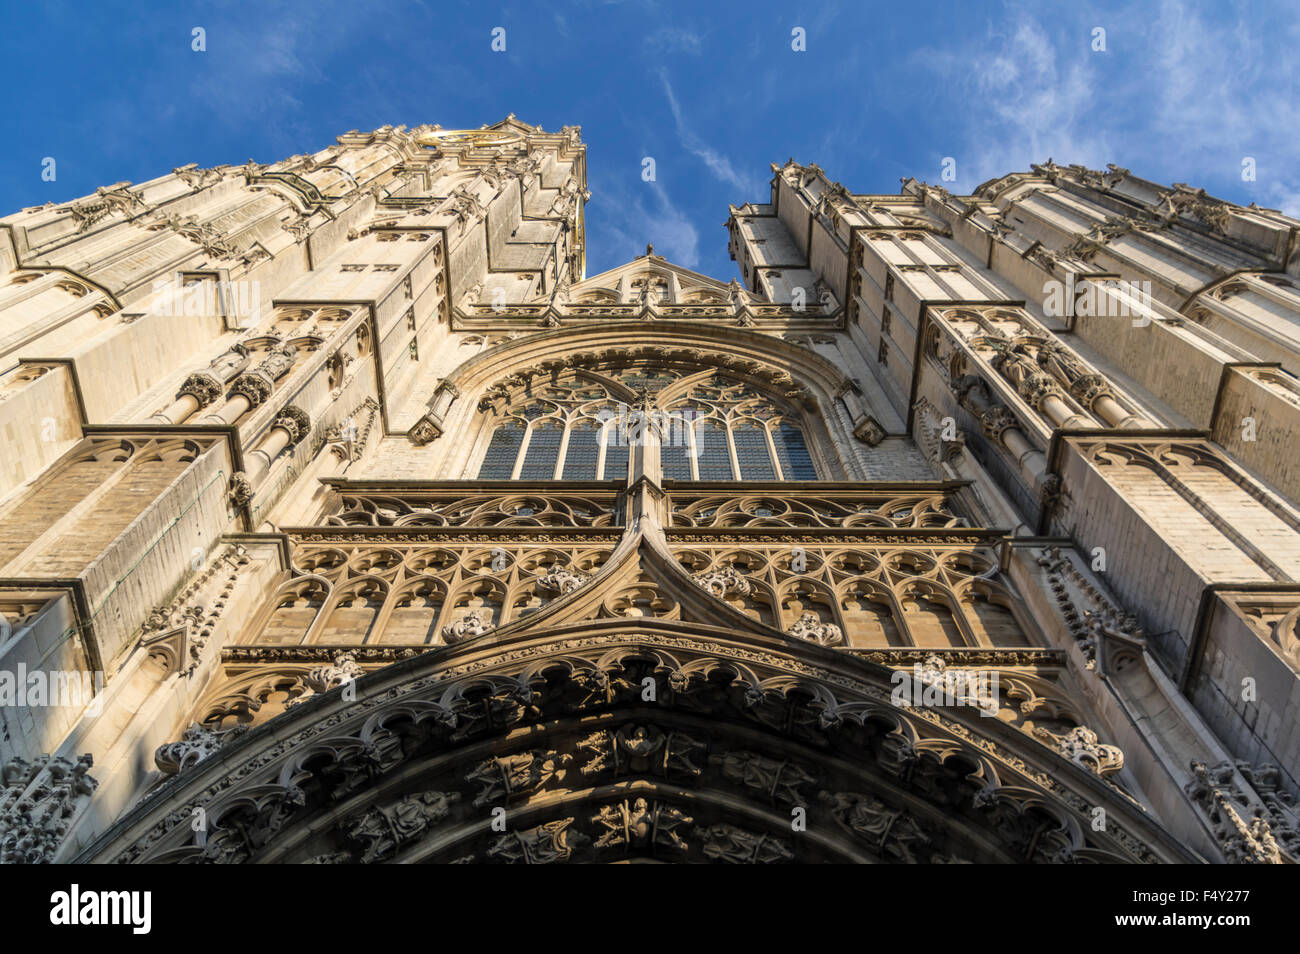 Fassade der Kathedrale von Notre-Dame (Onze-Lieve-Vrouwekathedraal) in Antwerpen, die größte gotische Kirche in Belgien. Stockfoto